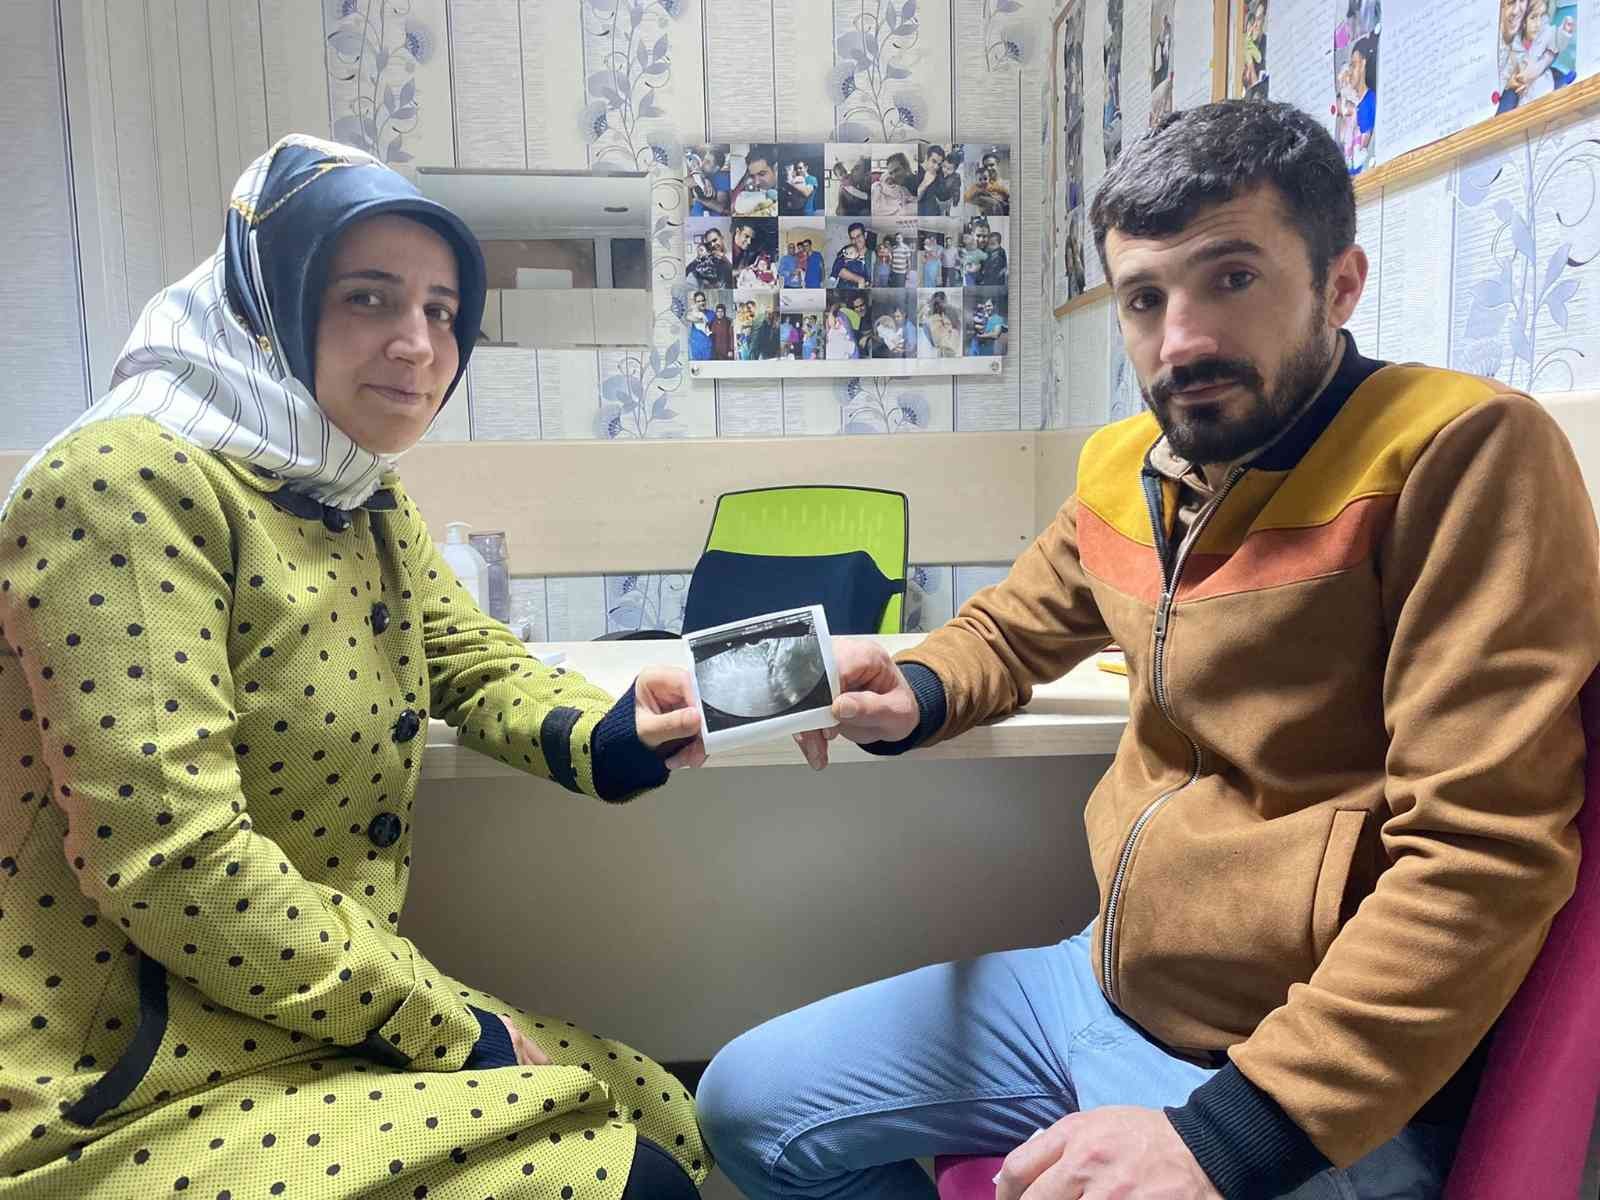 Defalarca denemelerine rağmen evlat sahibi olamayan çift müjdeyi aldı #diyarbakir